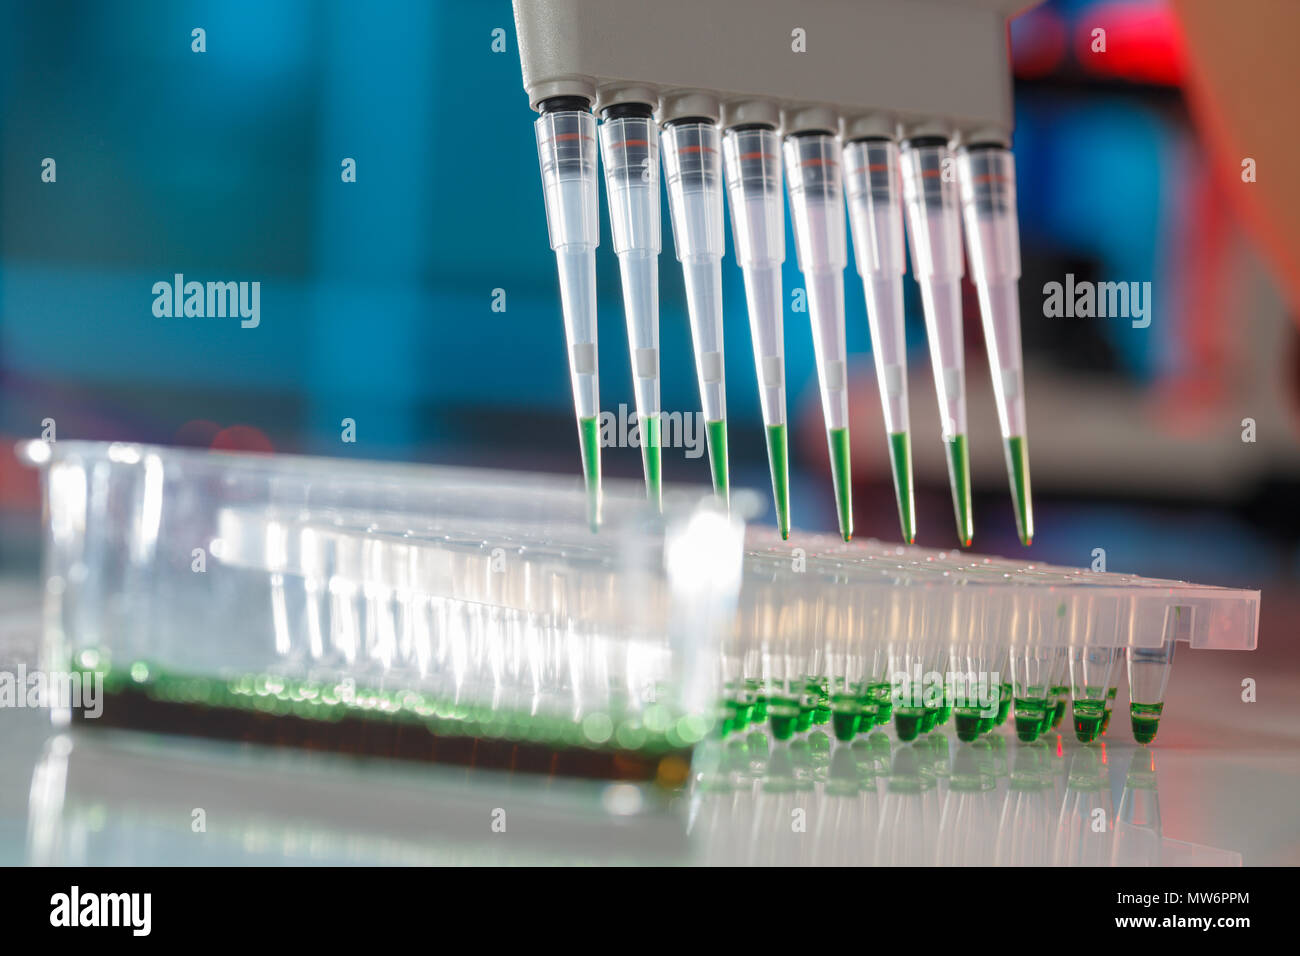 Elektrophorese gerät in einem Genetics Lab den genetischen Code zu entschlüsseln. Stockfoto